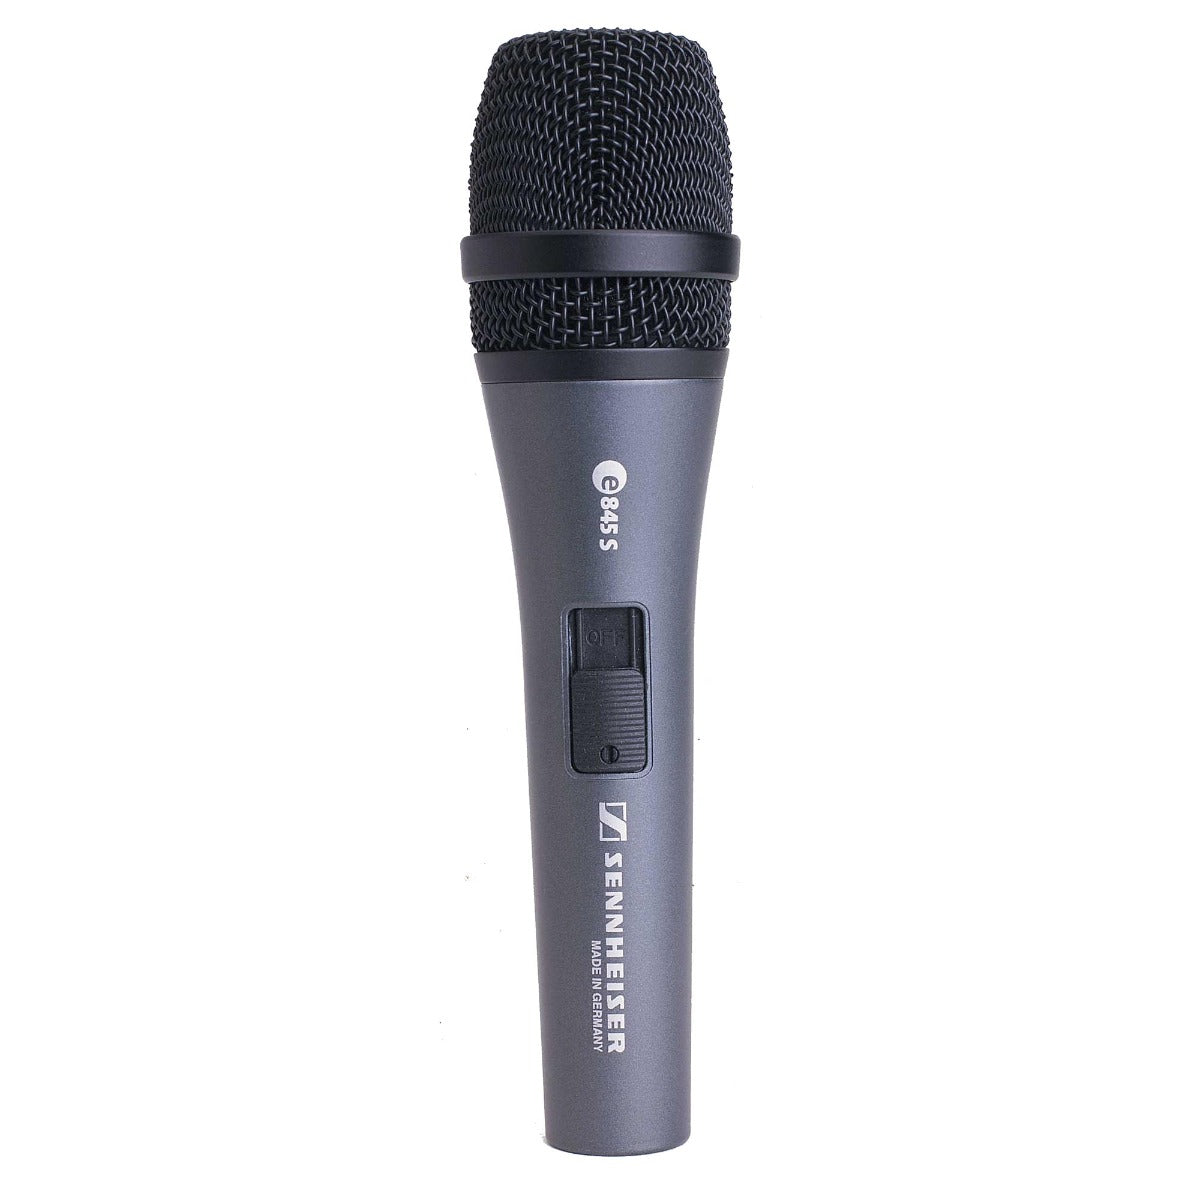 Sennheiser e 845-S Dynamic Vocal Microphone